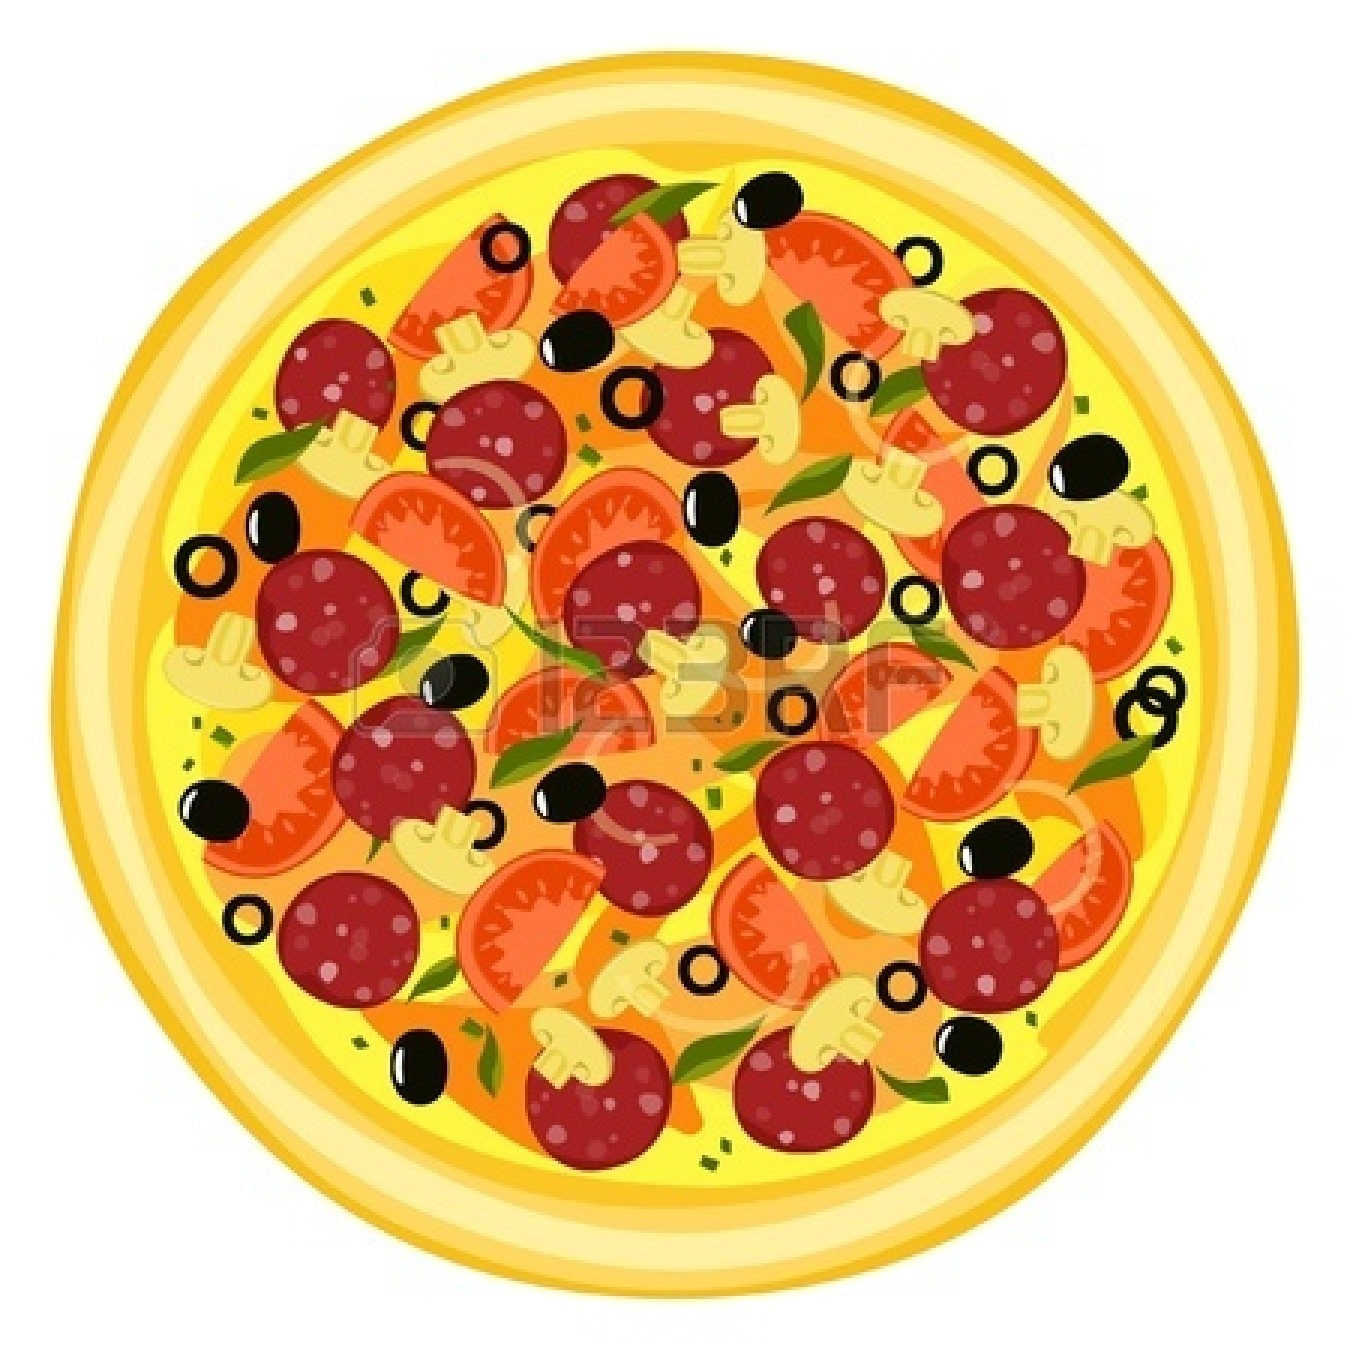 Free pizza clip art - Free Clipart Pizza